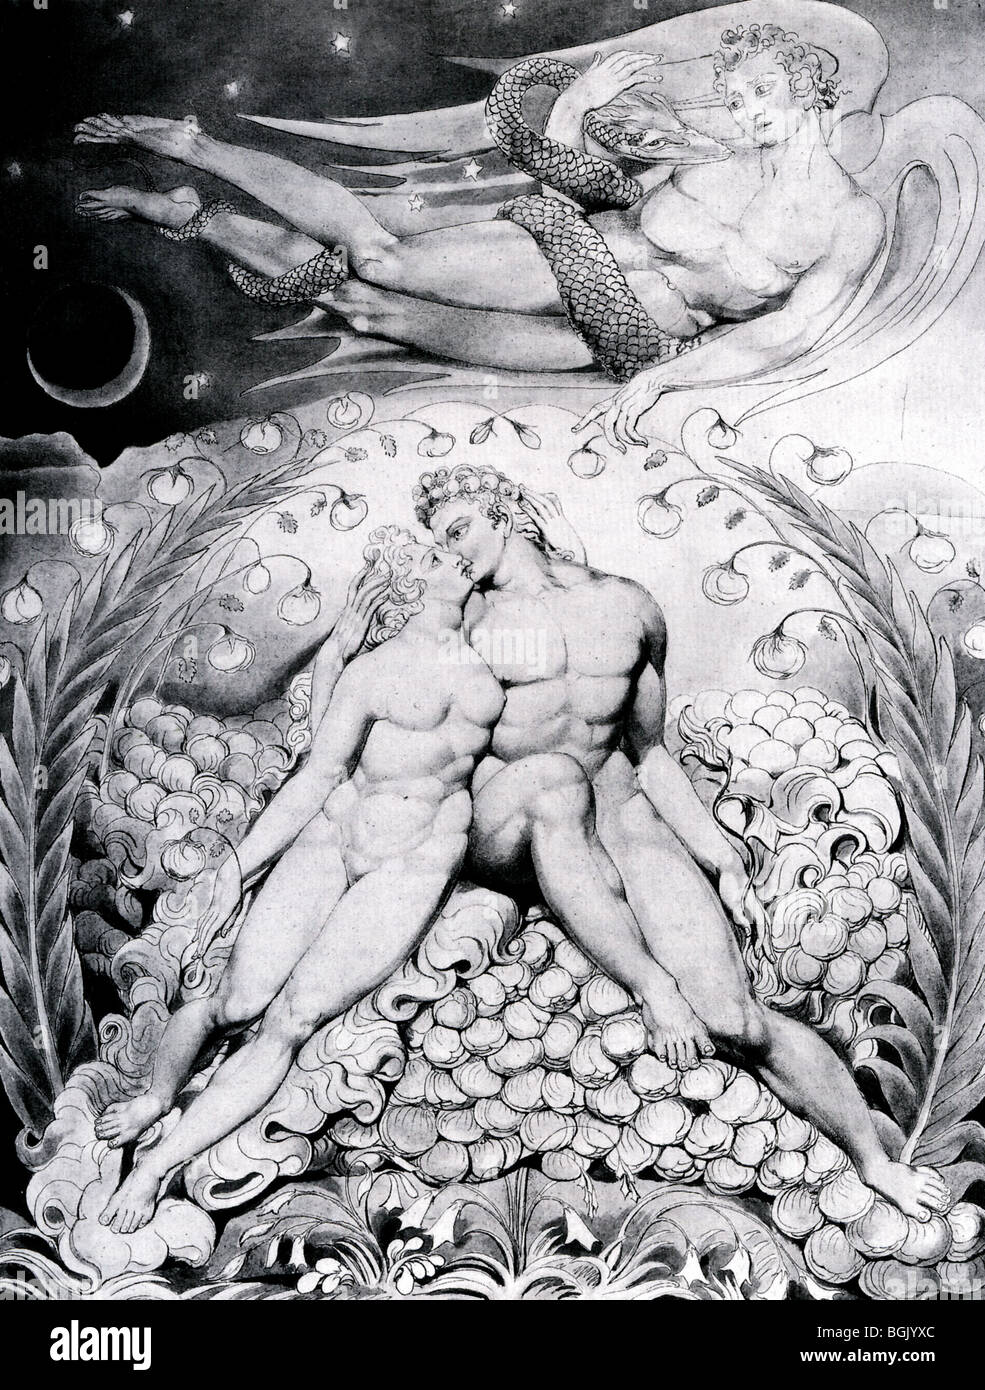 Paradis perdu illustration par William Blake en 1807 montre Adam et Eve vu par Satan comme il est titulaire d'un serpent Banque D'Images